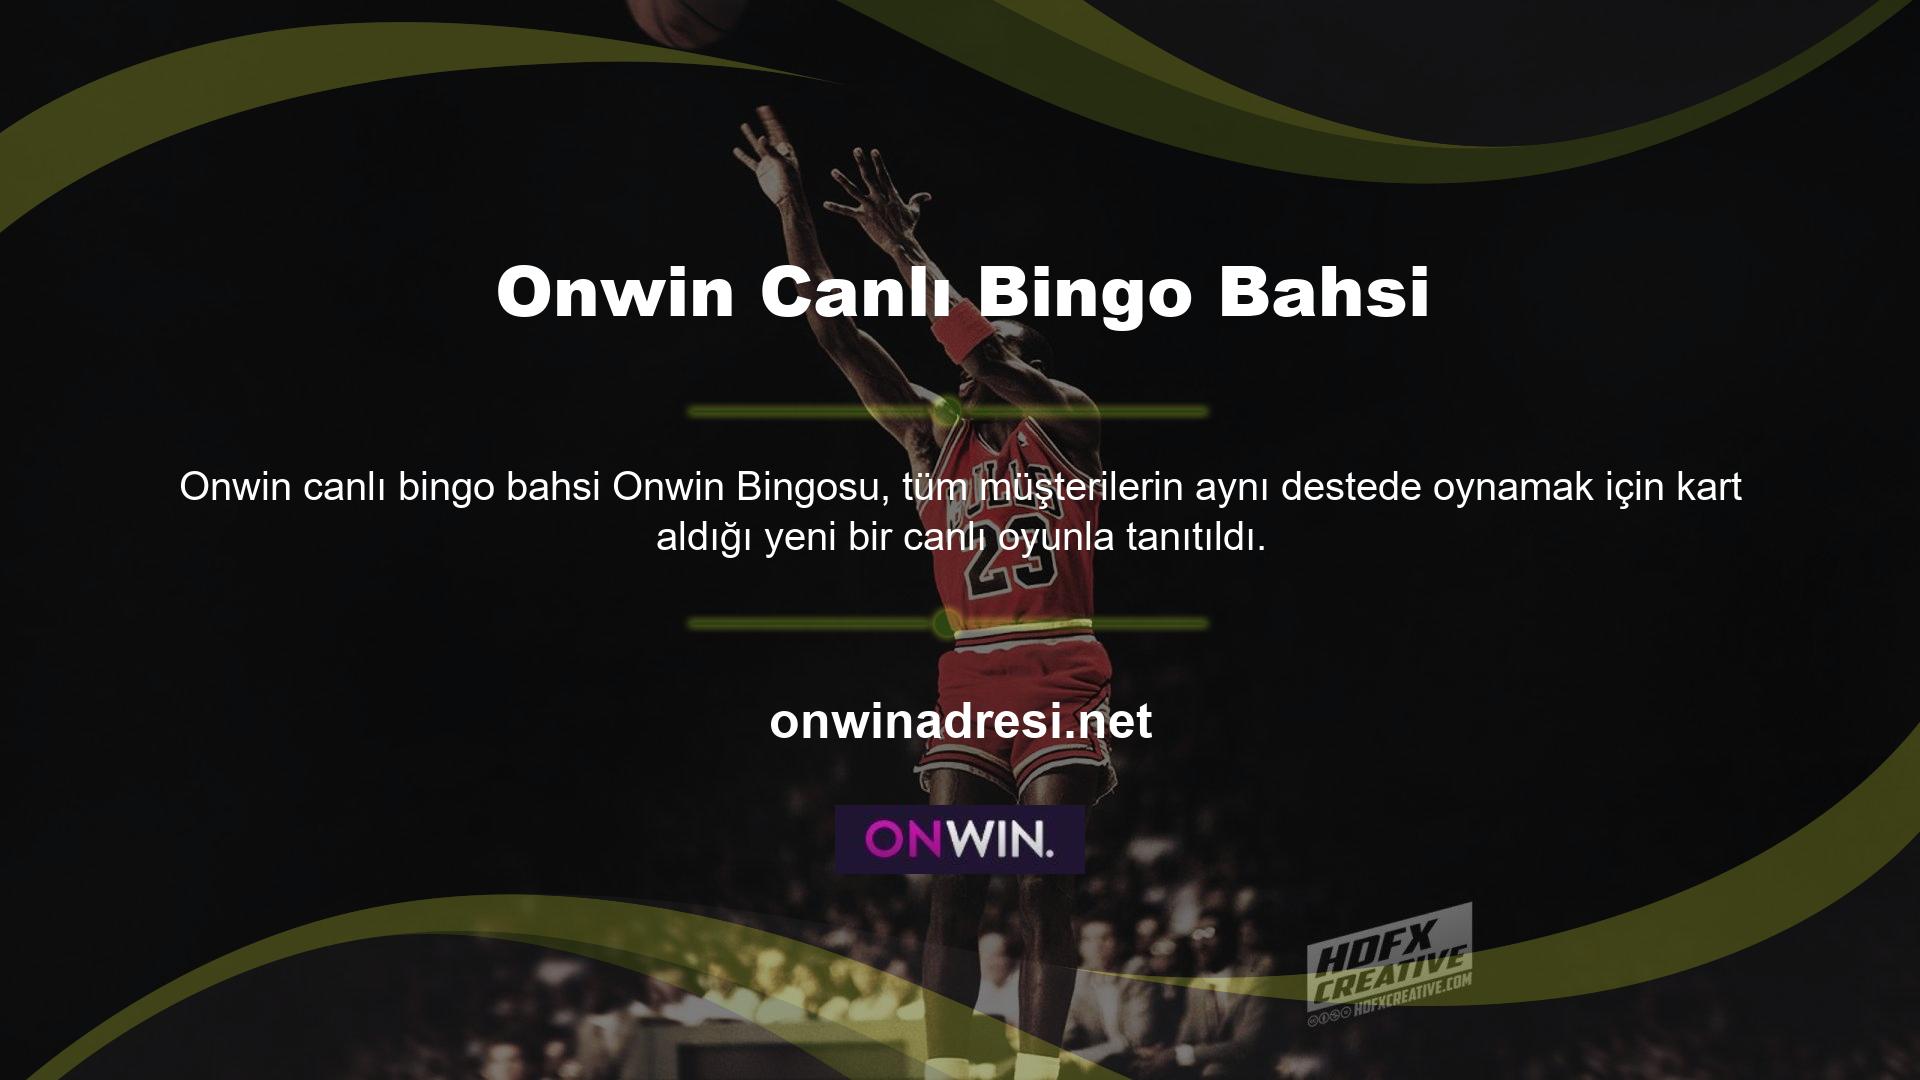 Onwin bahis sitesi, casinoda 40 ila 100 masa açmaya gerek kalmadan bingo kategorisinde bahis yapmanızı sağlar